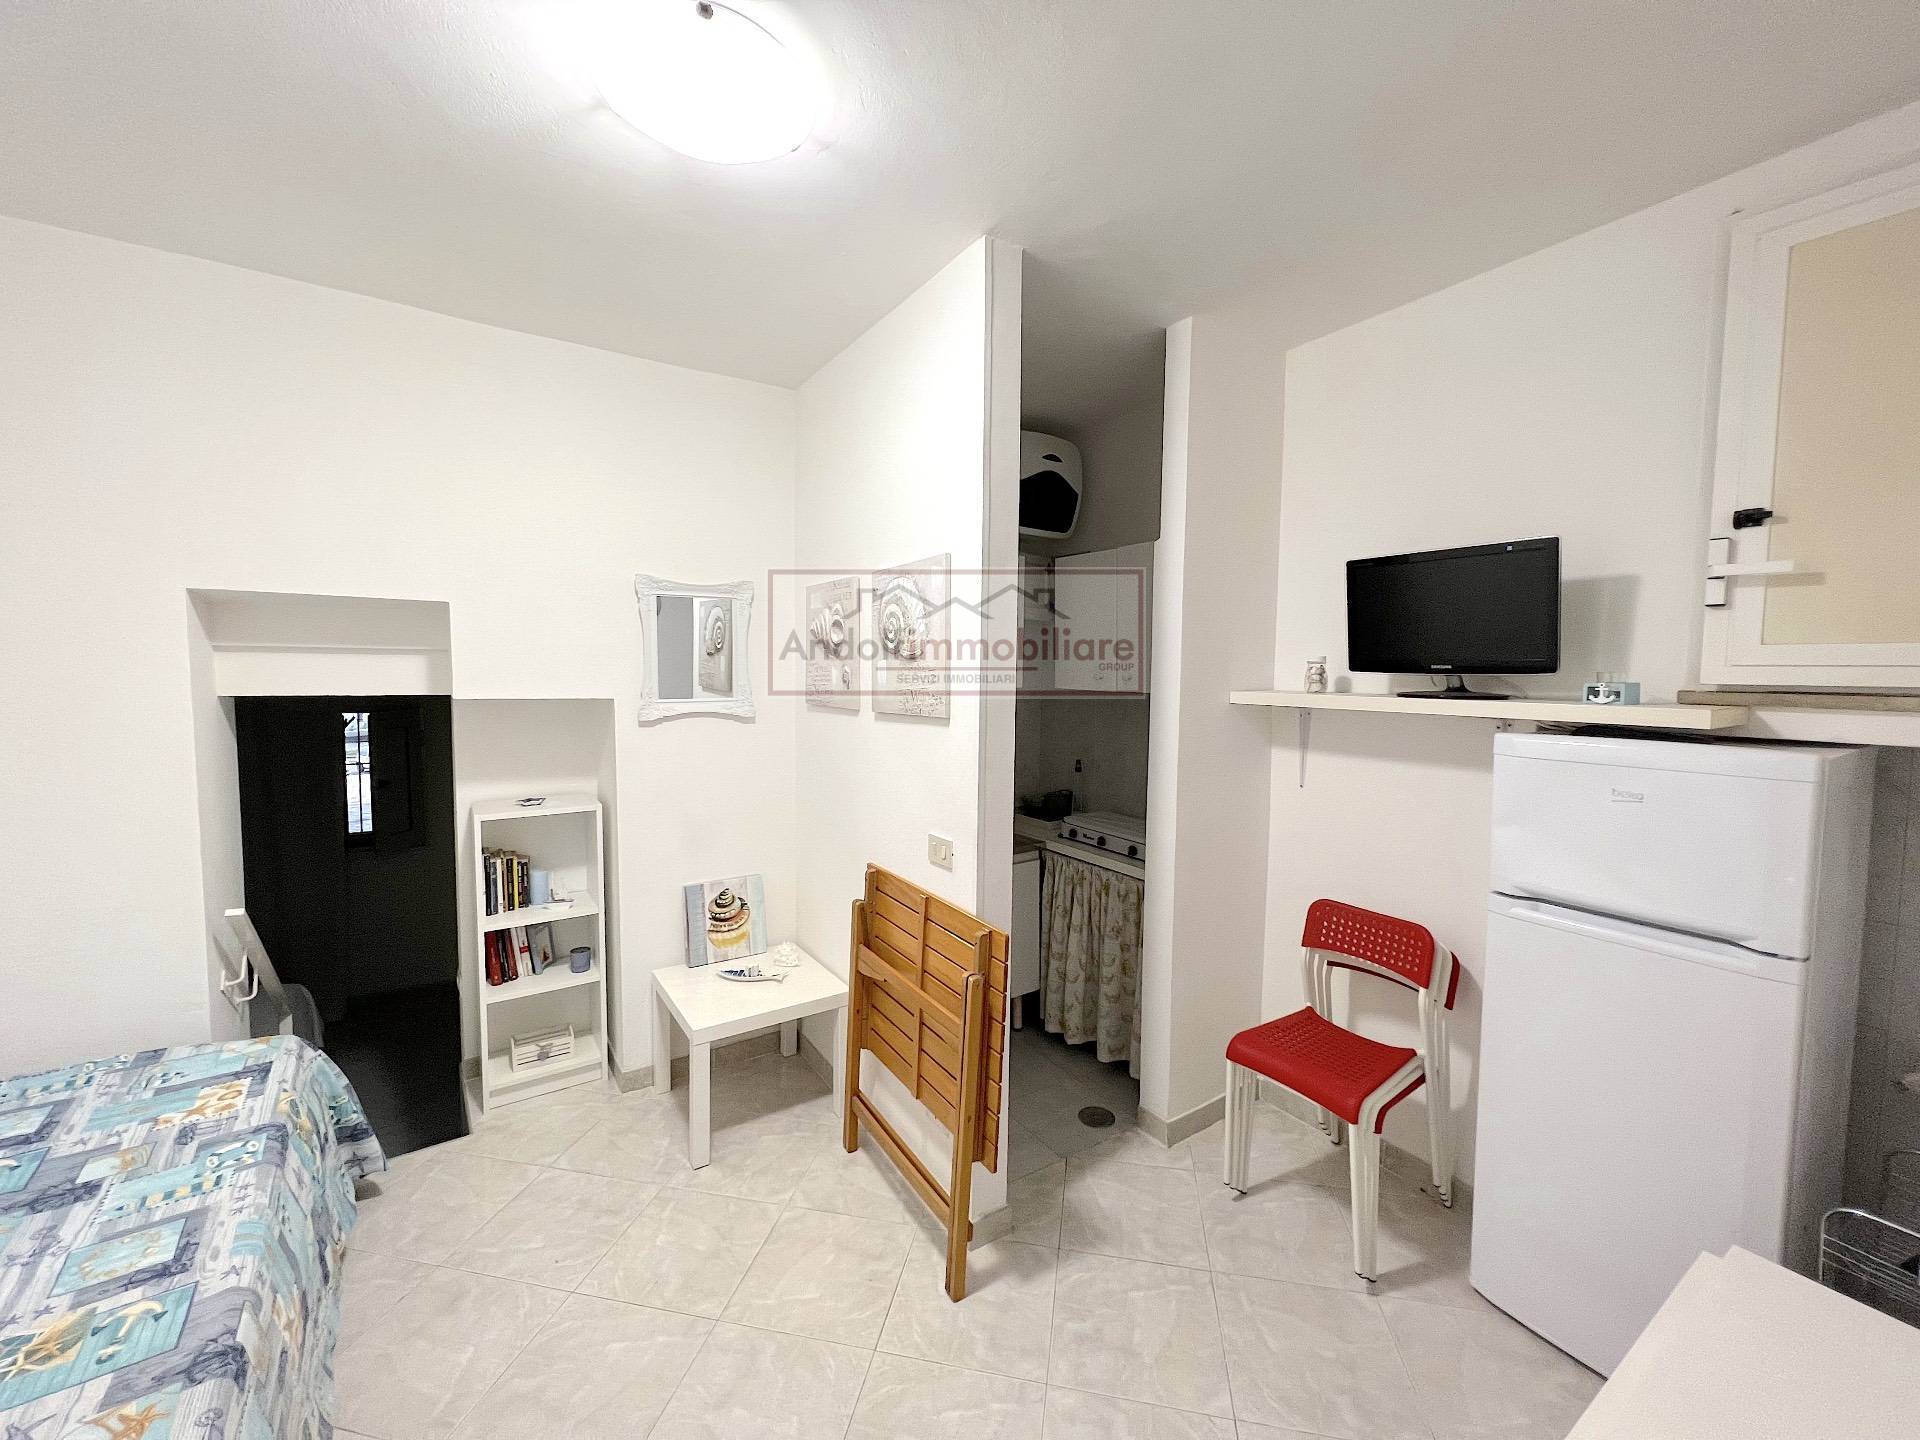 Appartamento in vendita a Gaeta, 4 locali, prezzo € 215.000 | CambioCasa.it